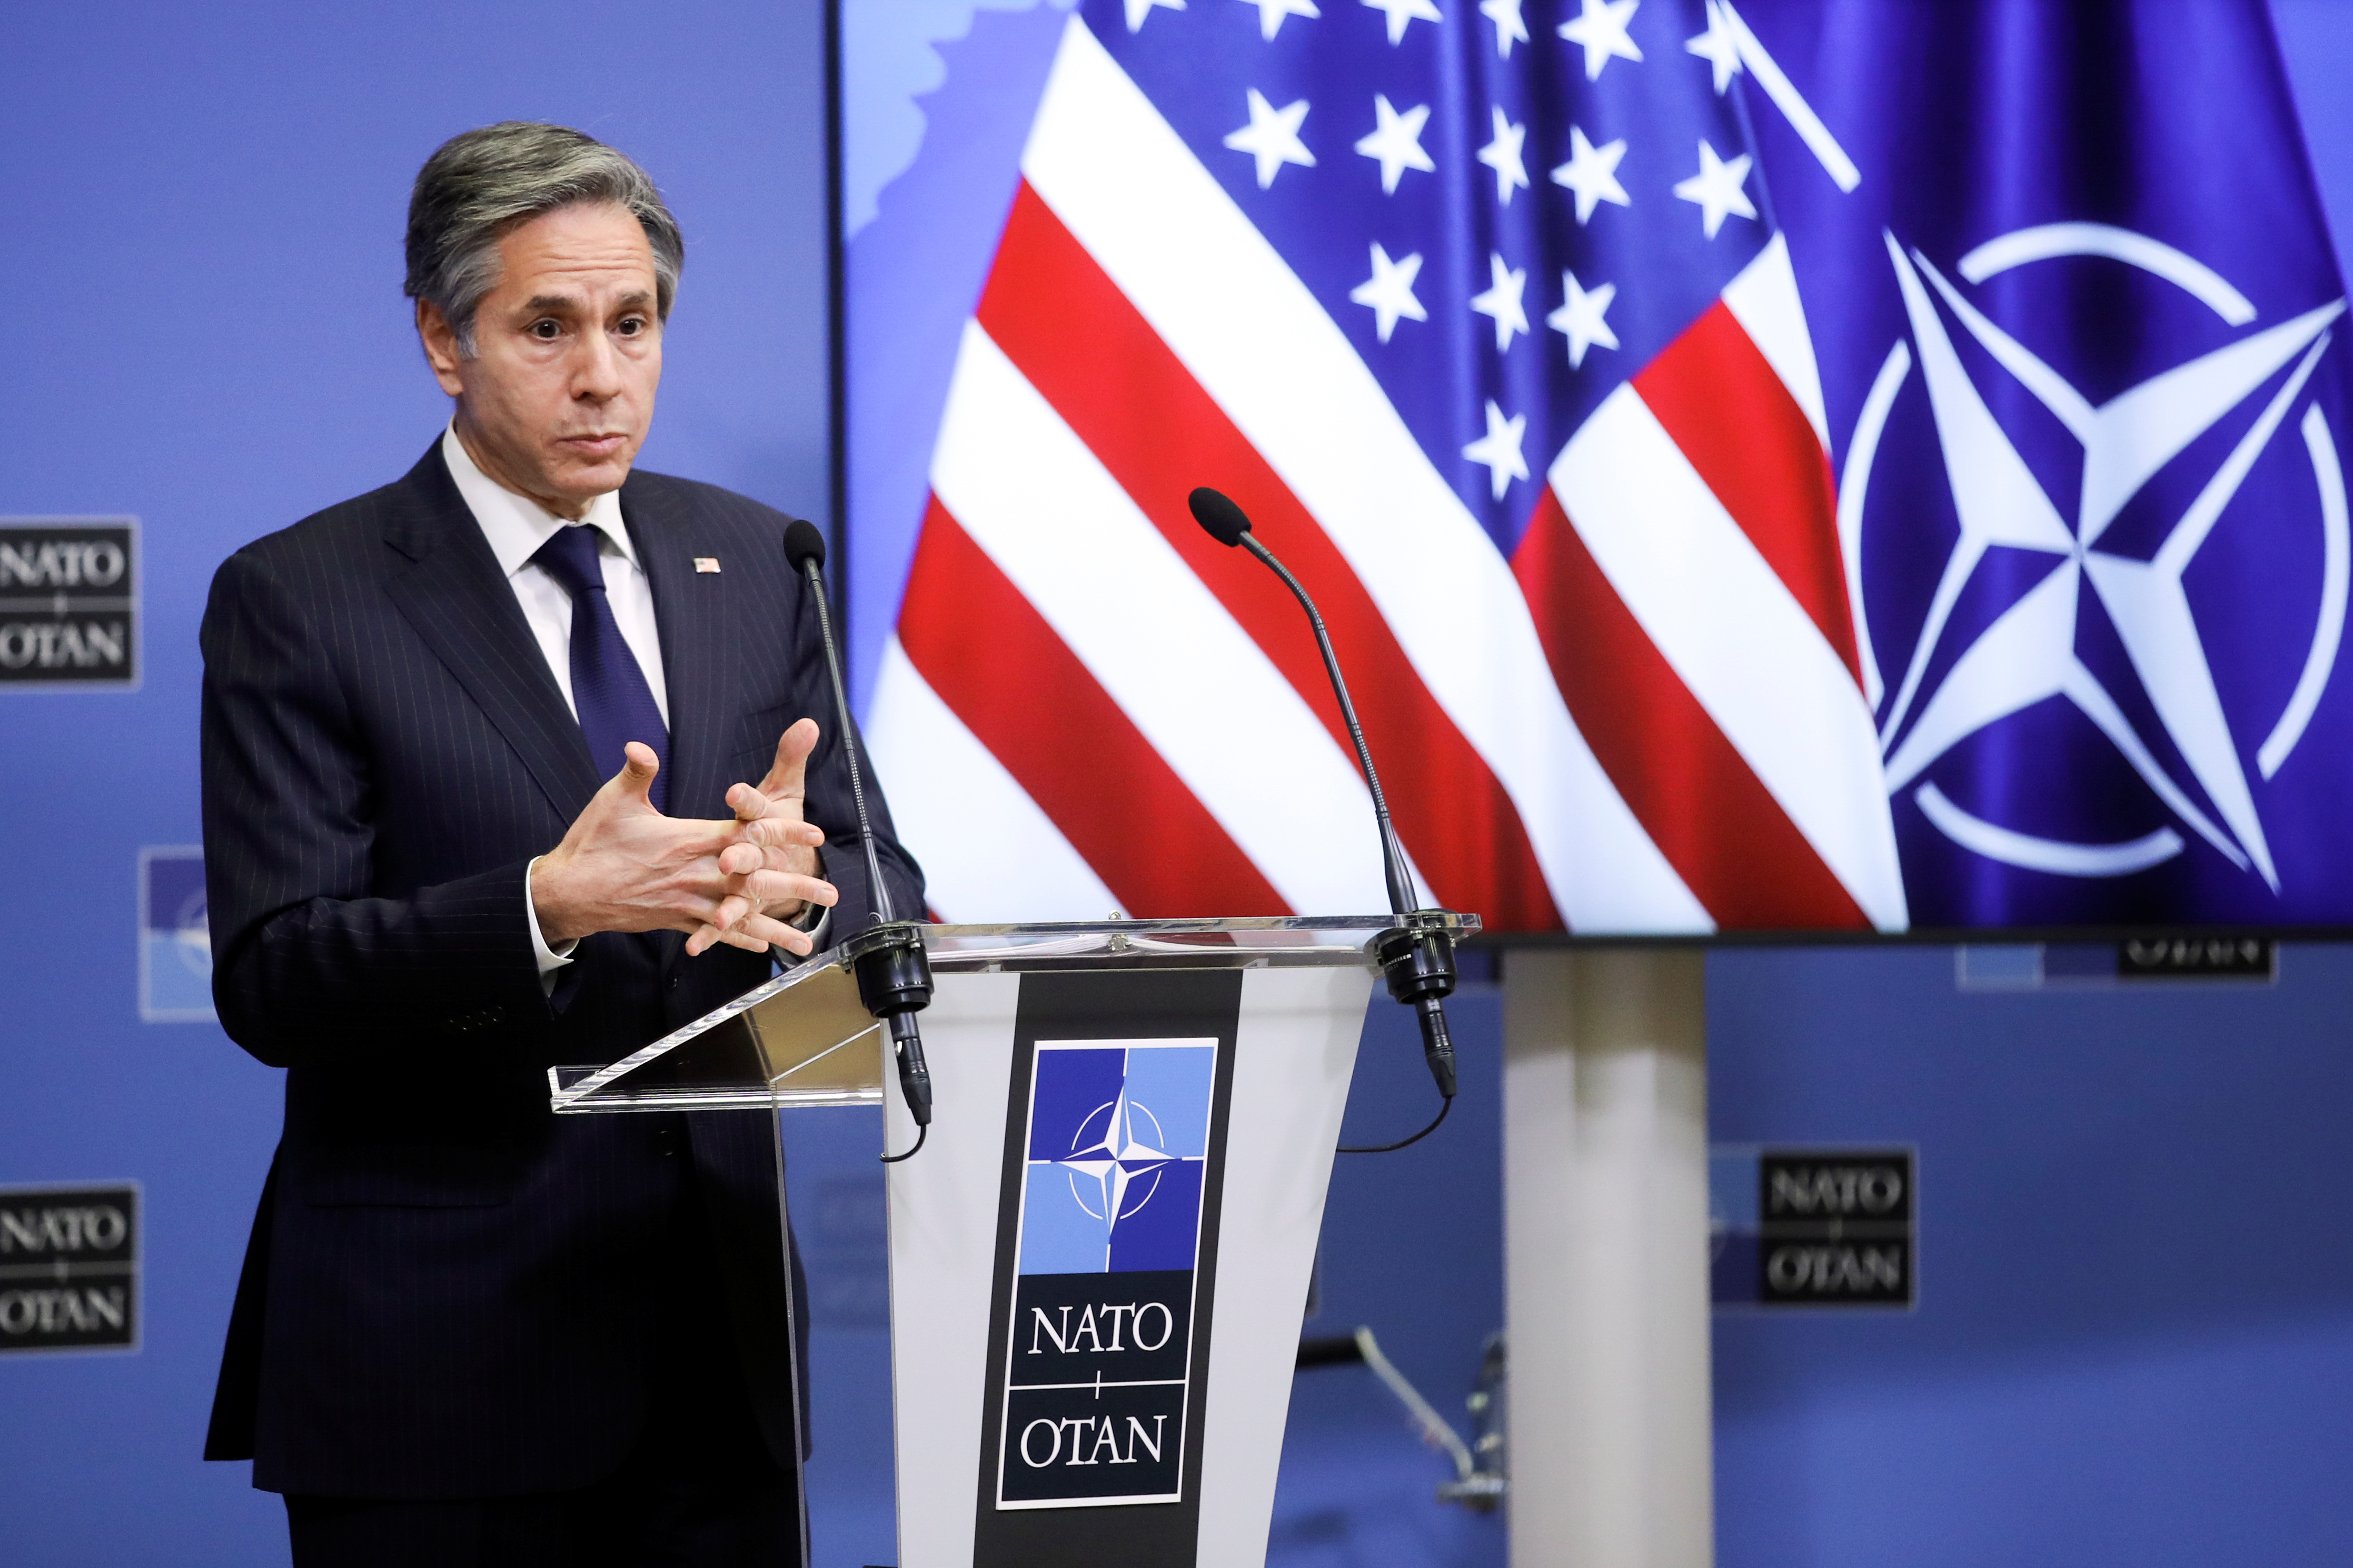 El secretario de Estado norteamericano, Antony Blinken, durante una conferencia de prensa al final de una reunión de ministros de Relaciones Exteriores de la OTAN en la sede de la Alianza en Bruselas, Bélgica, este 24 de marzo (Reuters)